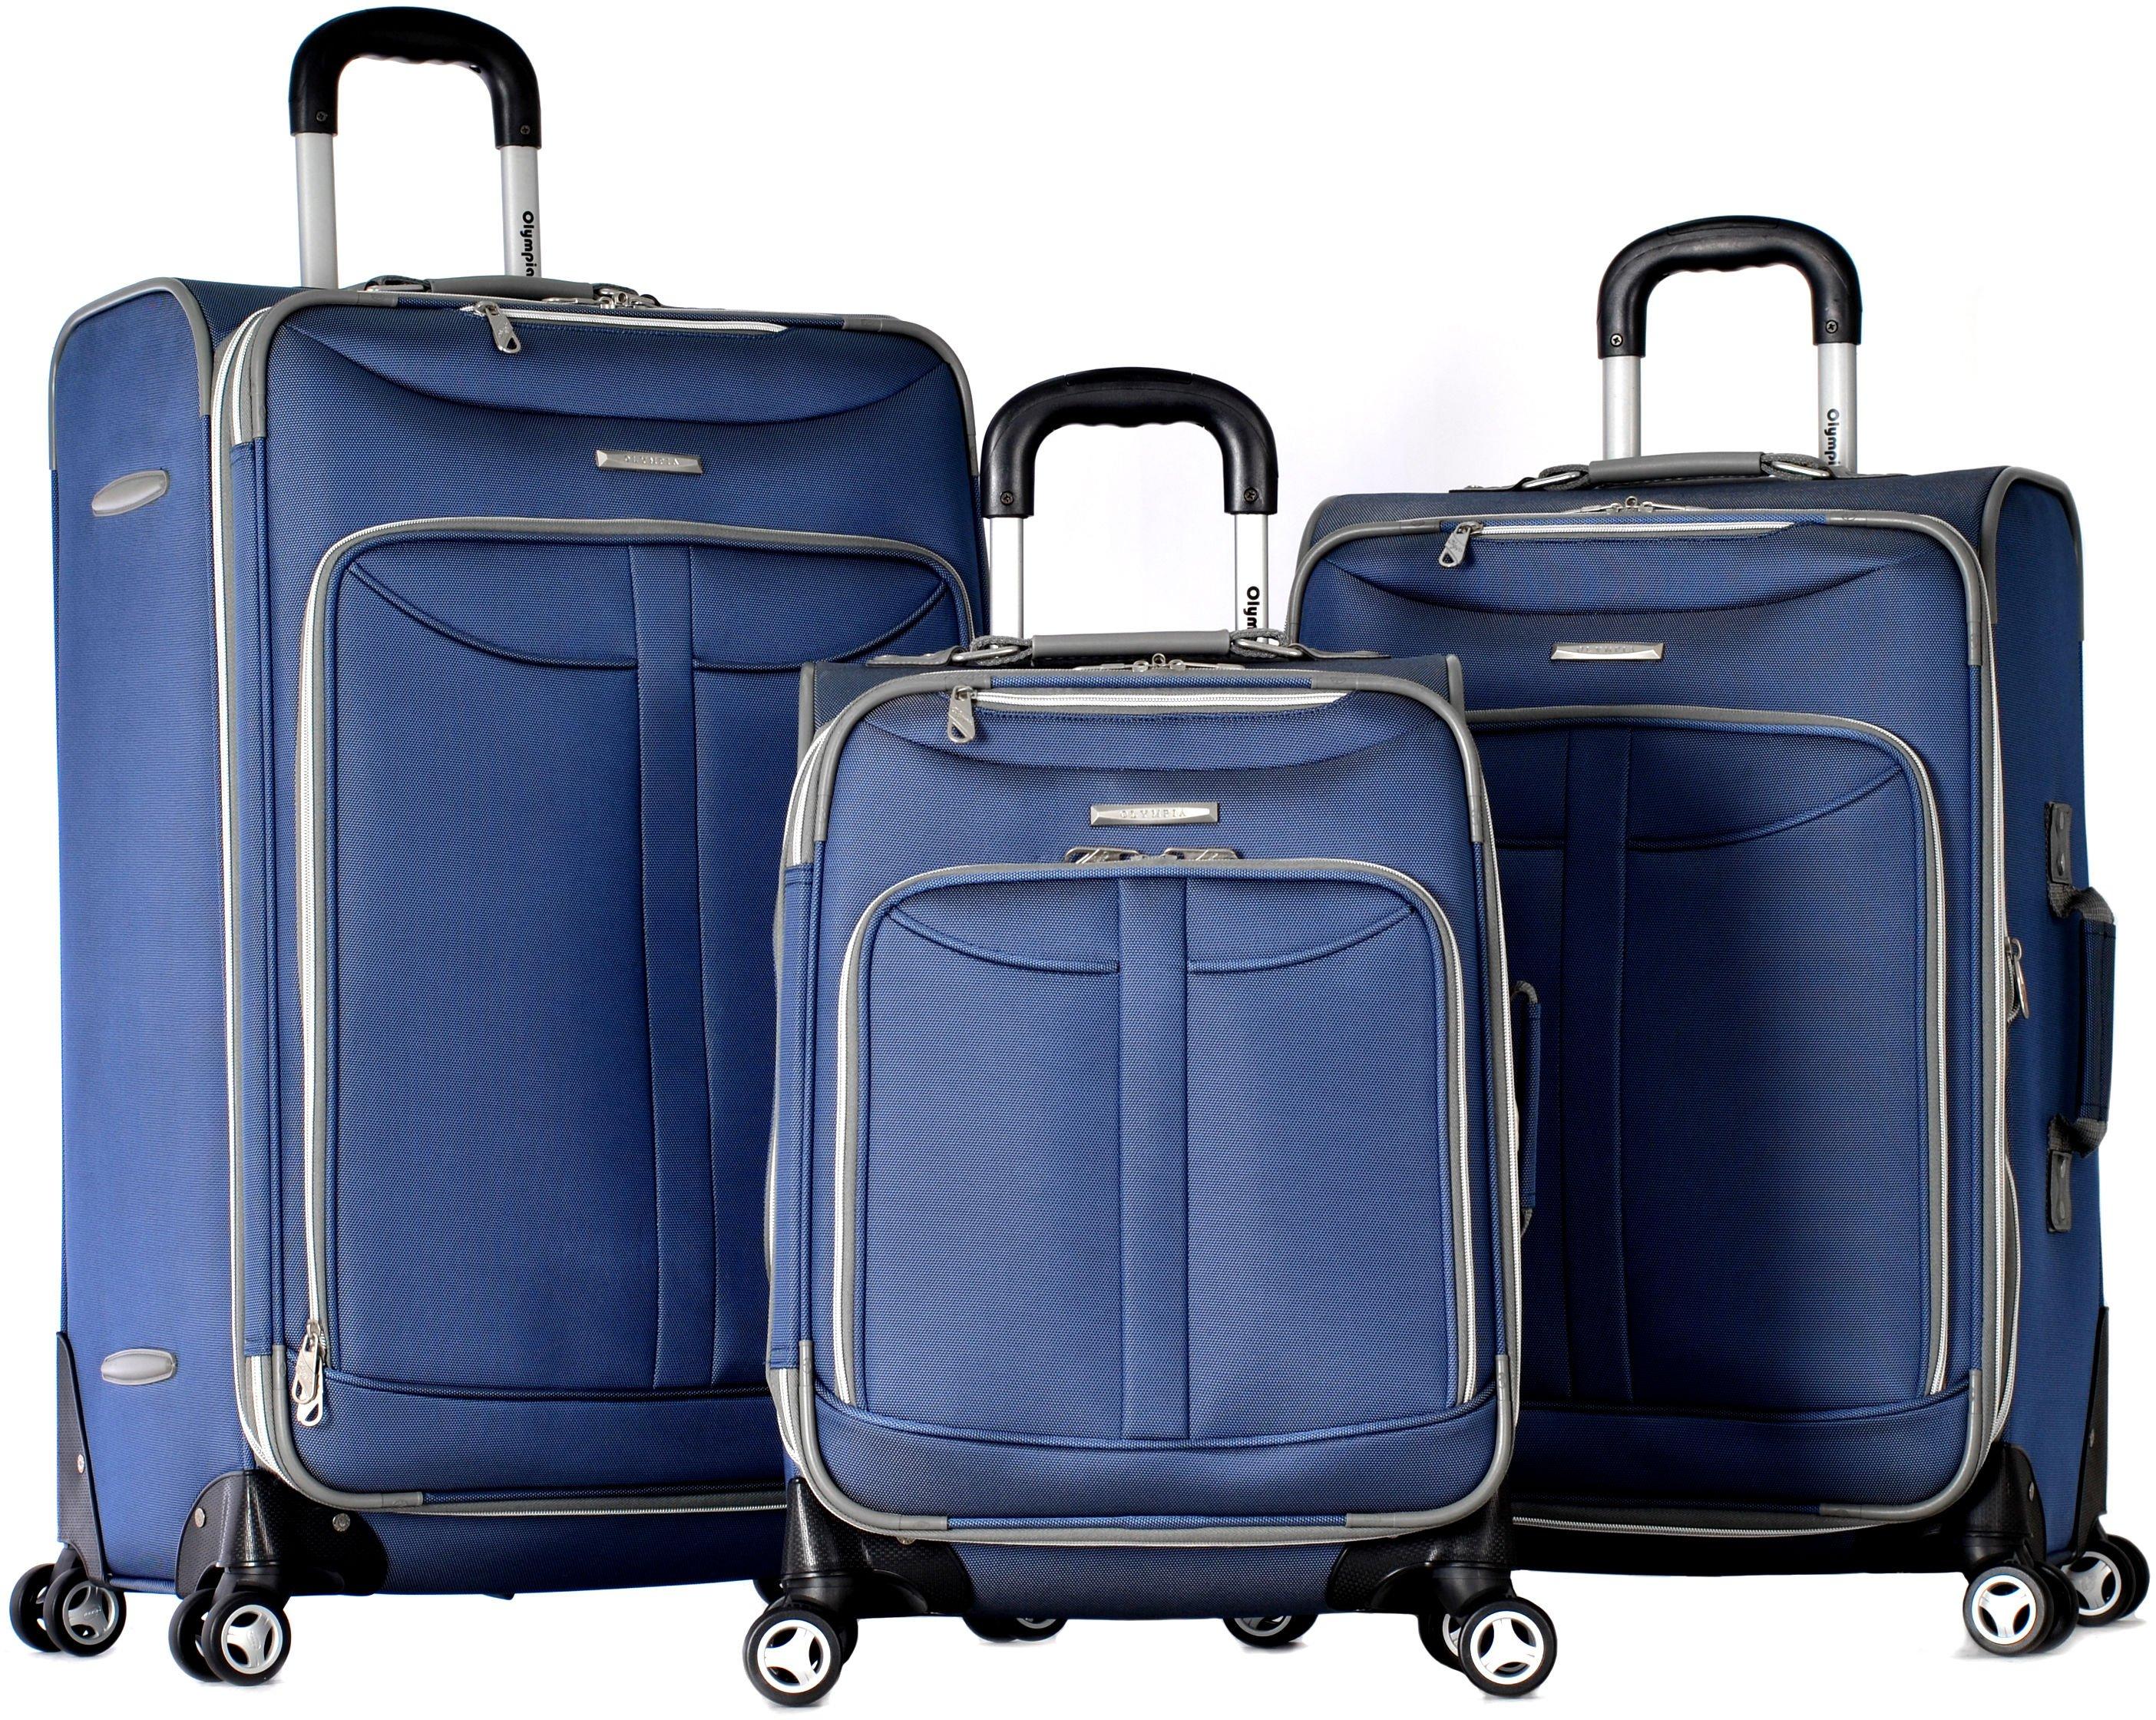 Tuscany 3-pc. Luggage Set